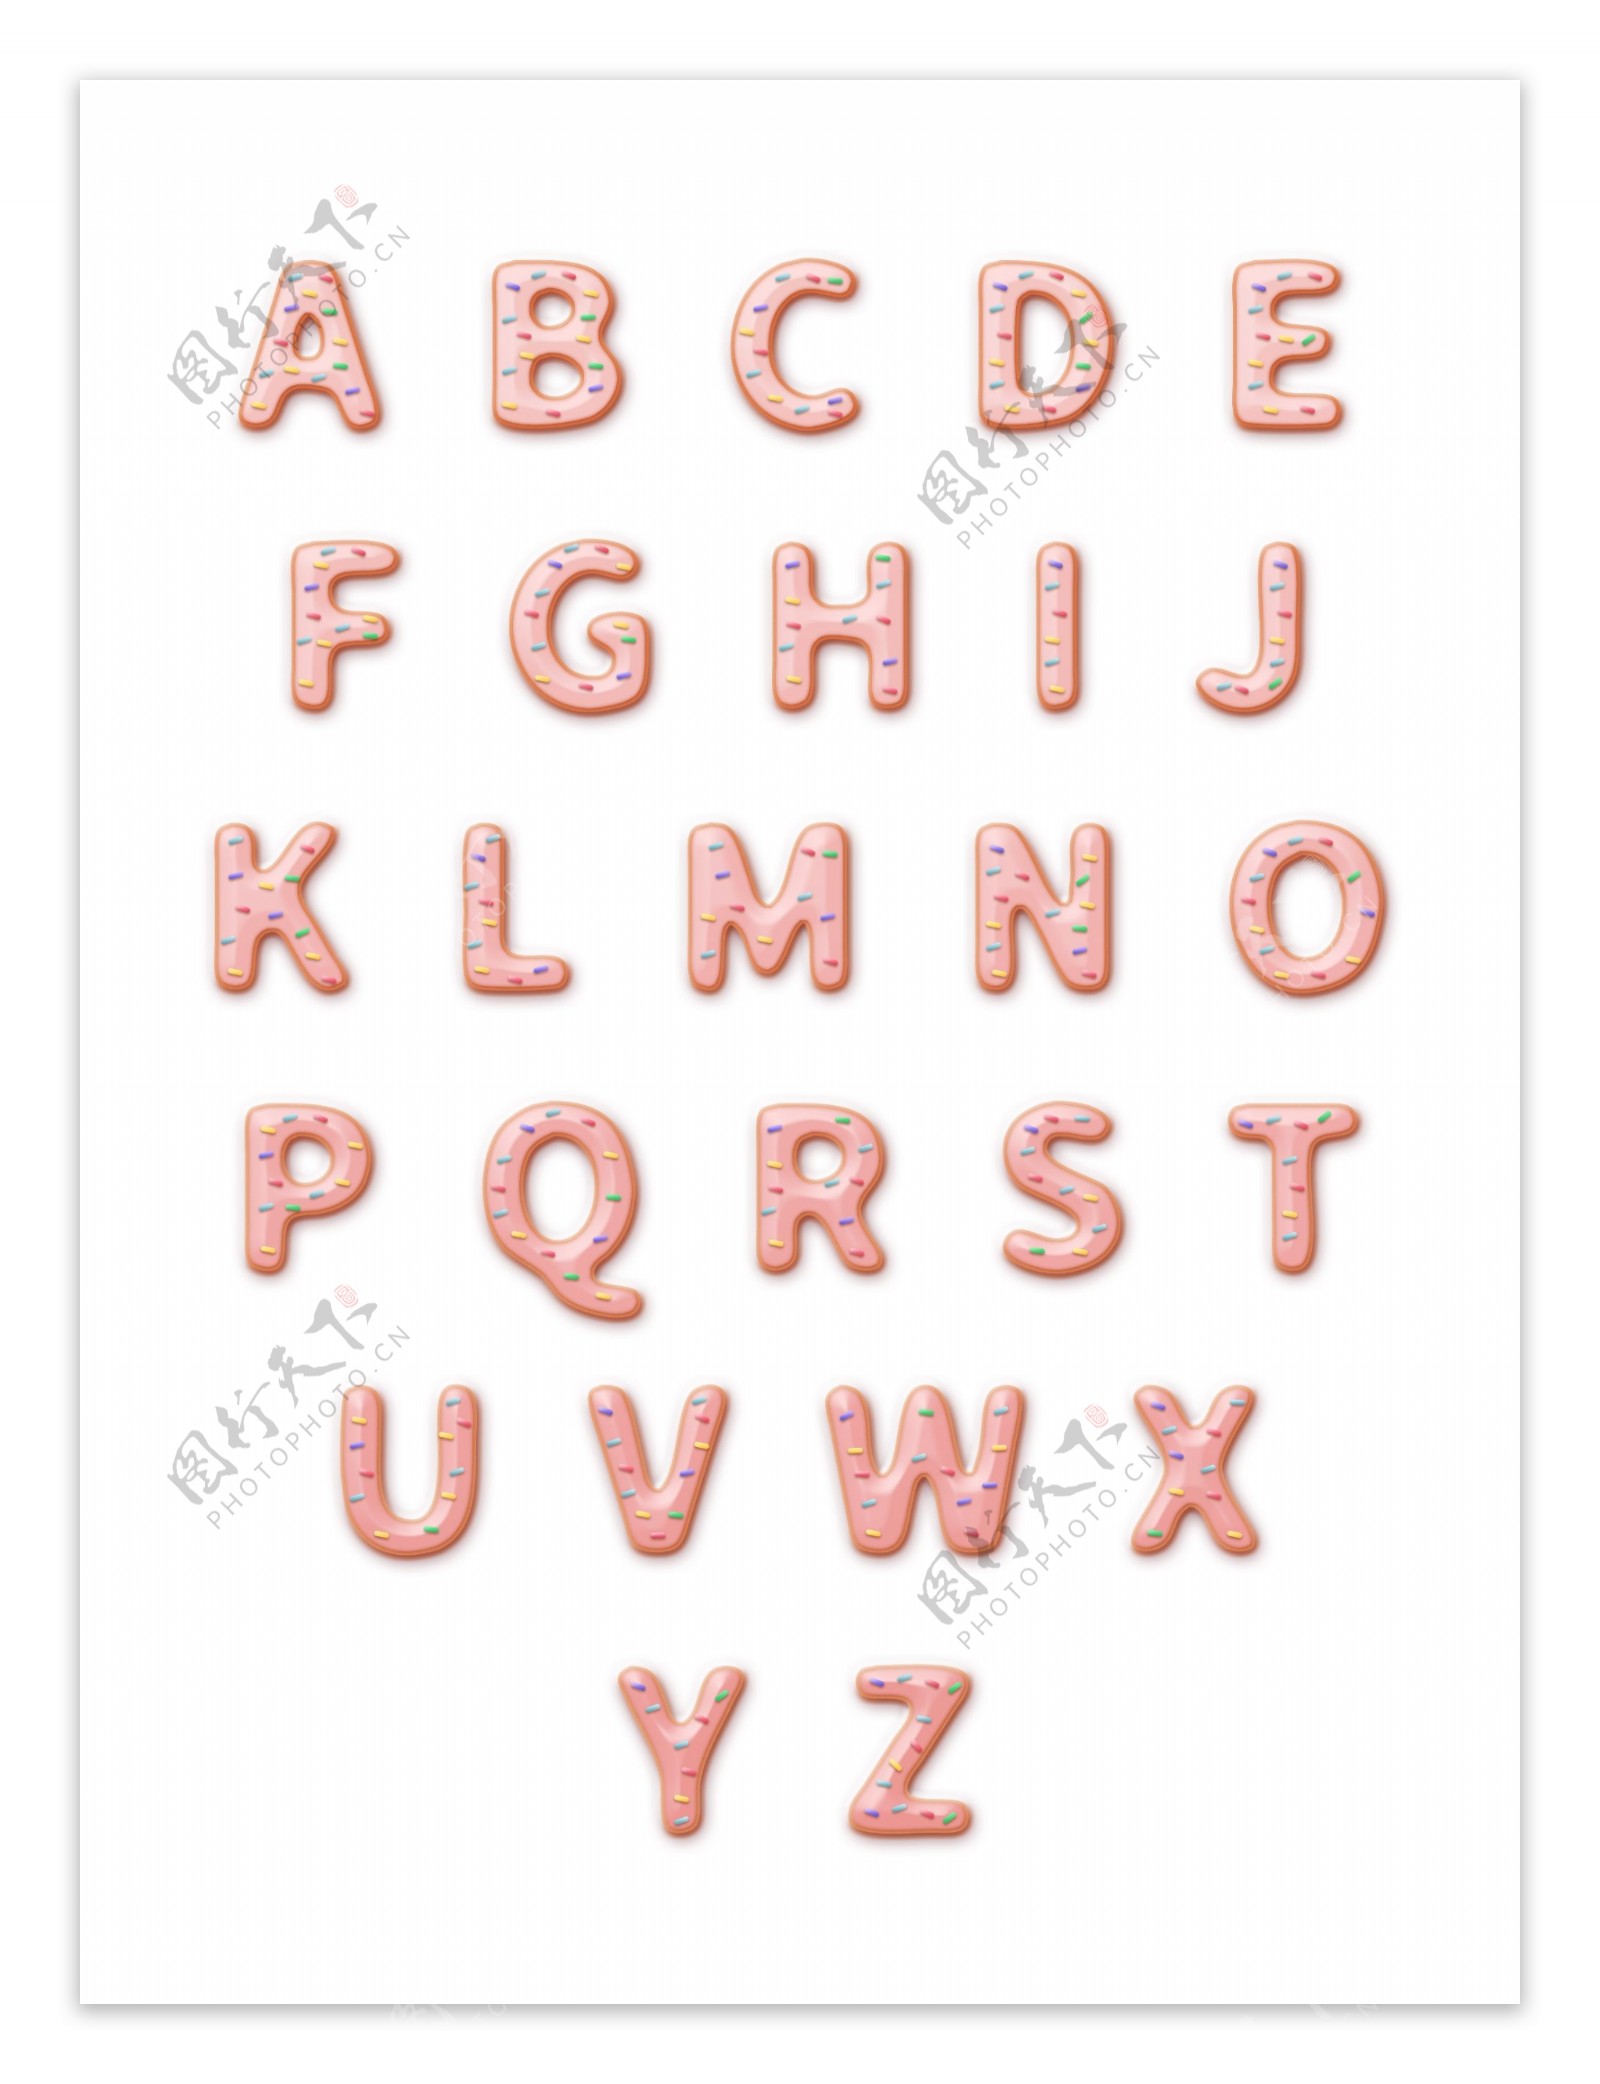 可自由组合的可爱甜甜圈糖衣英文字母